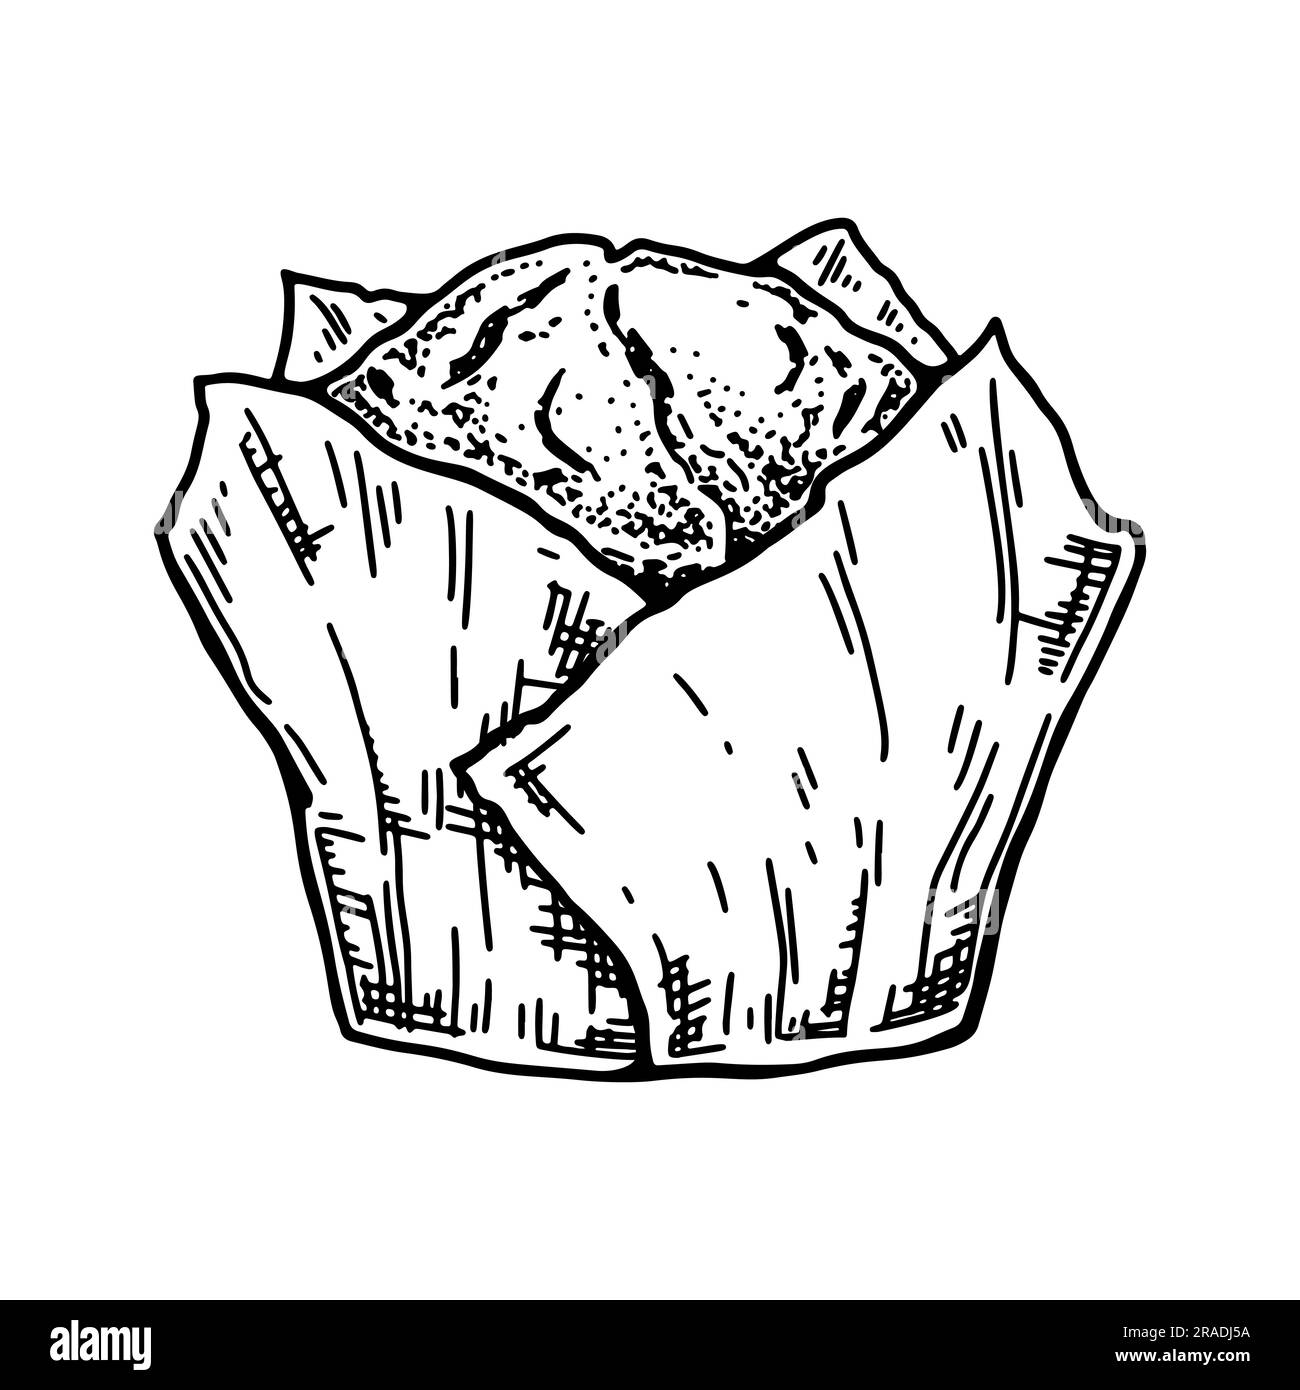 Muffin dans du papier artisanal. Illustration vectorielle vintage dans un style d'esquisse. Cupcake dessiné à la main. Produit de boulangerie Illustration de Vecteur